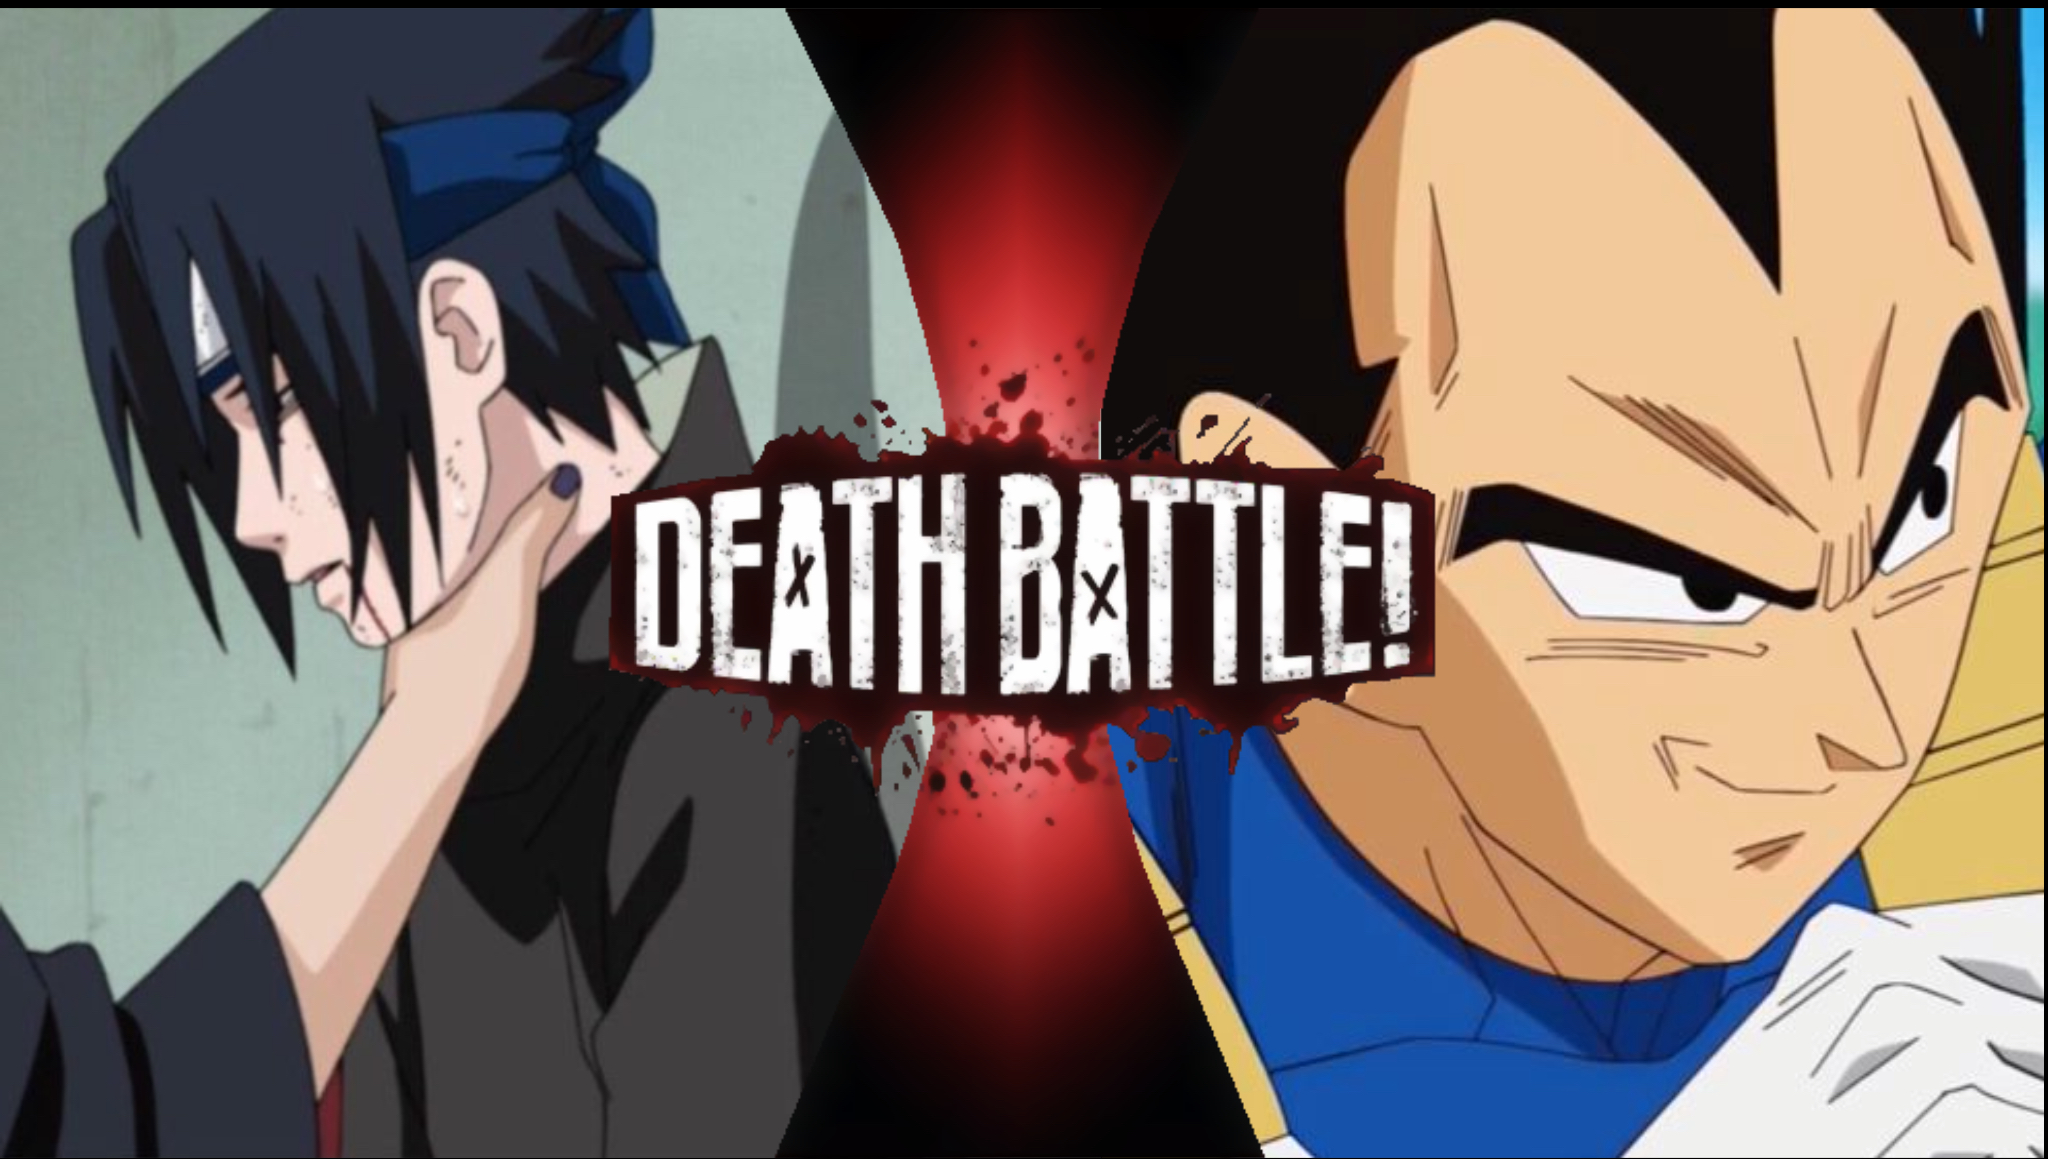 goku and naruto vs vegeta and sasuke